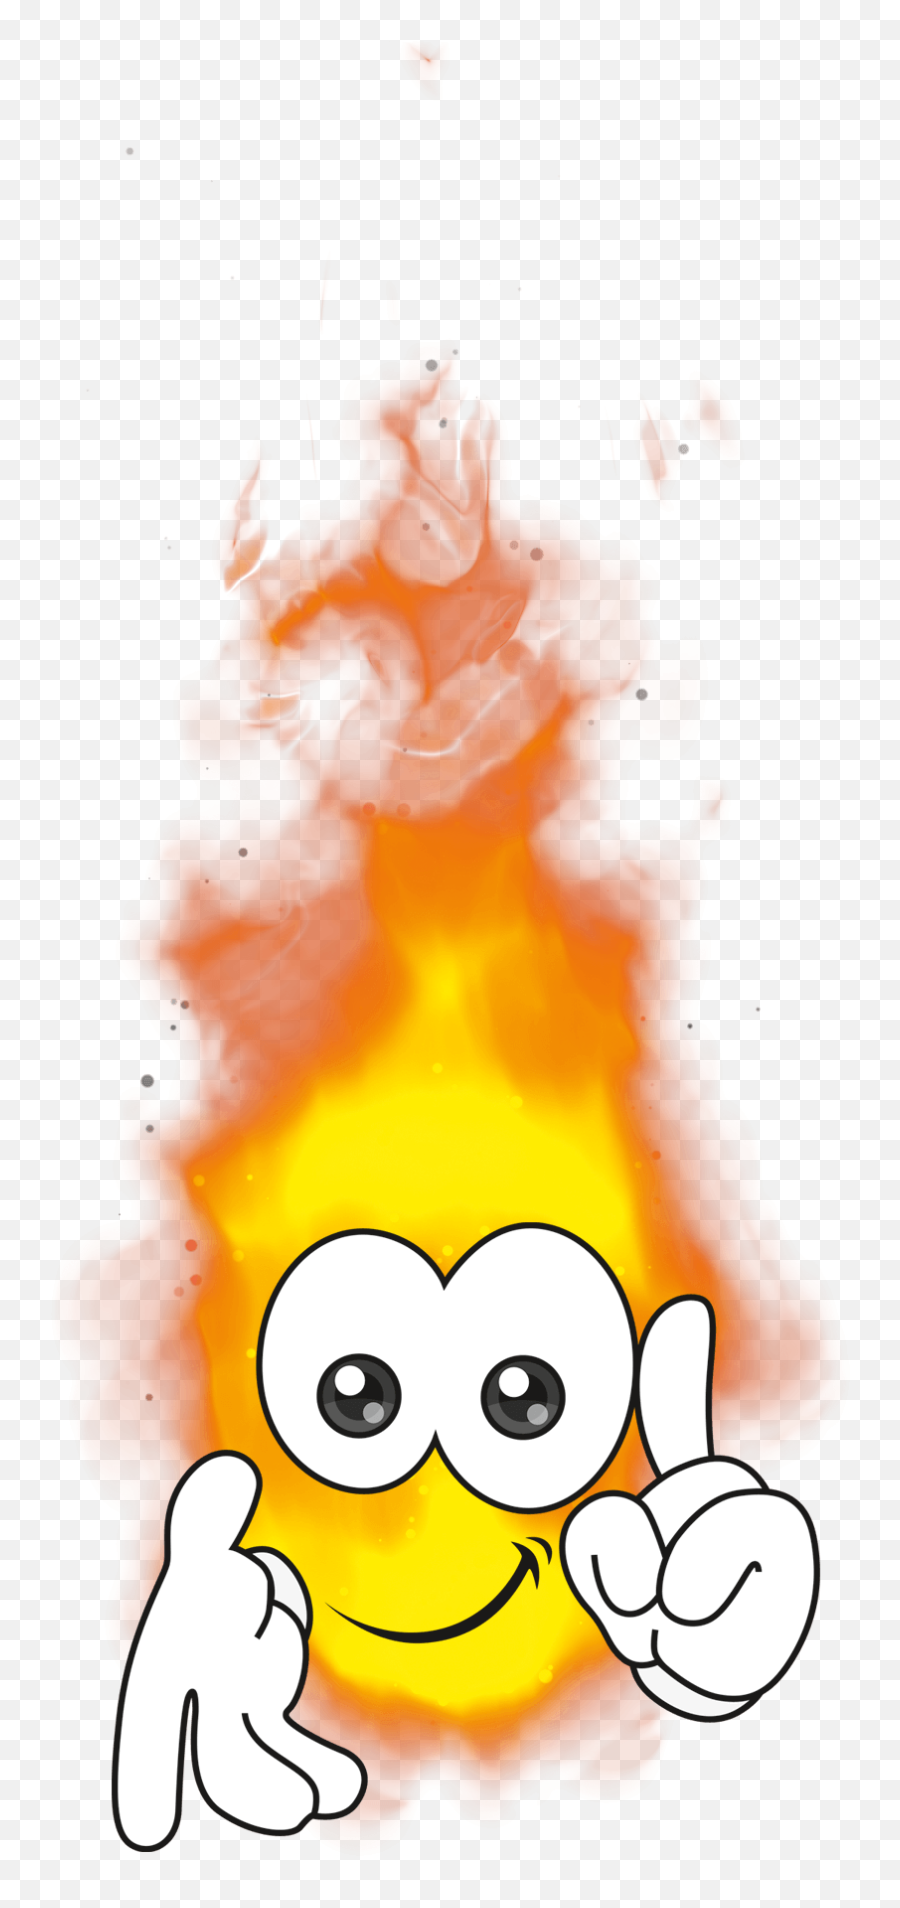 Burnie - Austroflamm Happy Emoji,Smokey Fireplace Emoticon